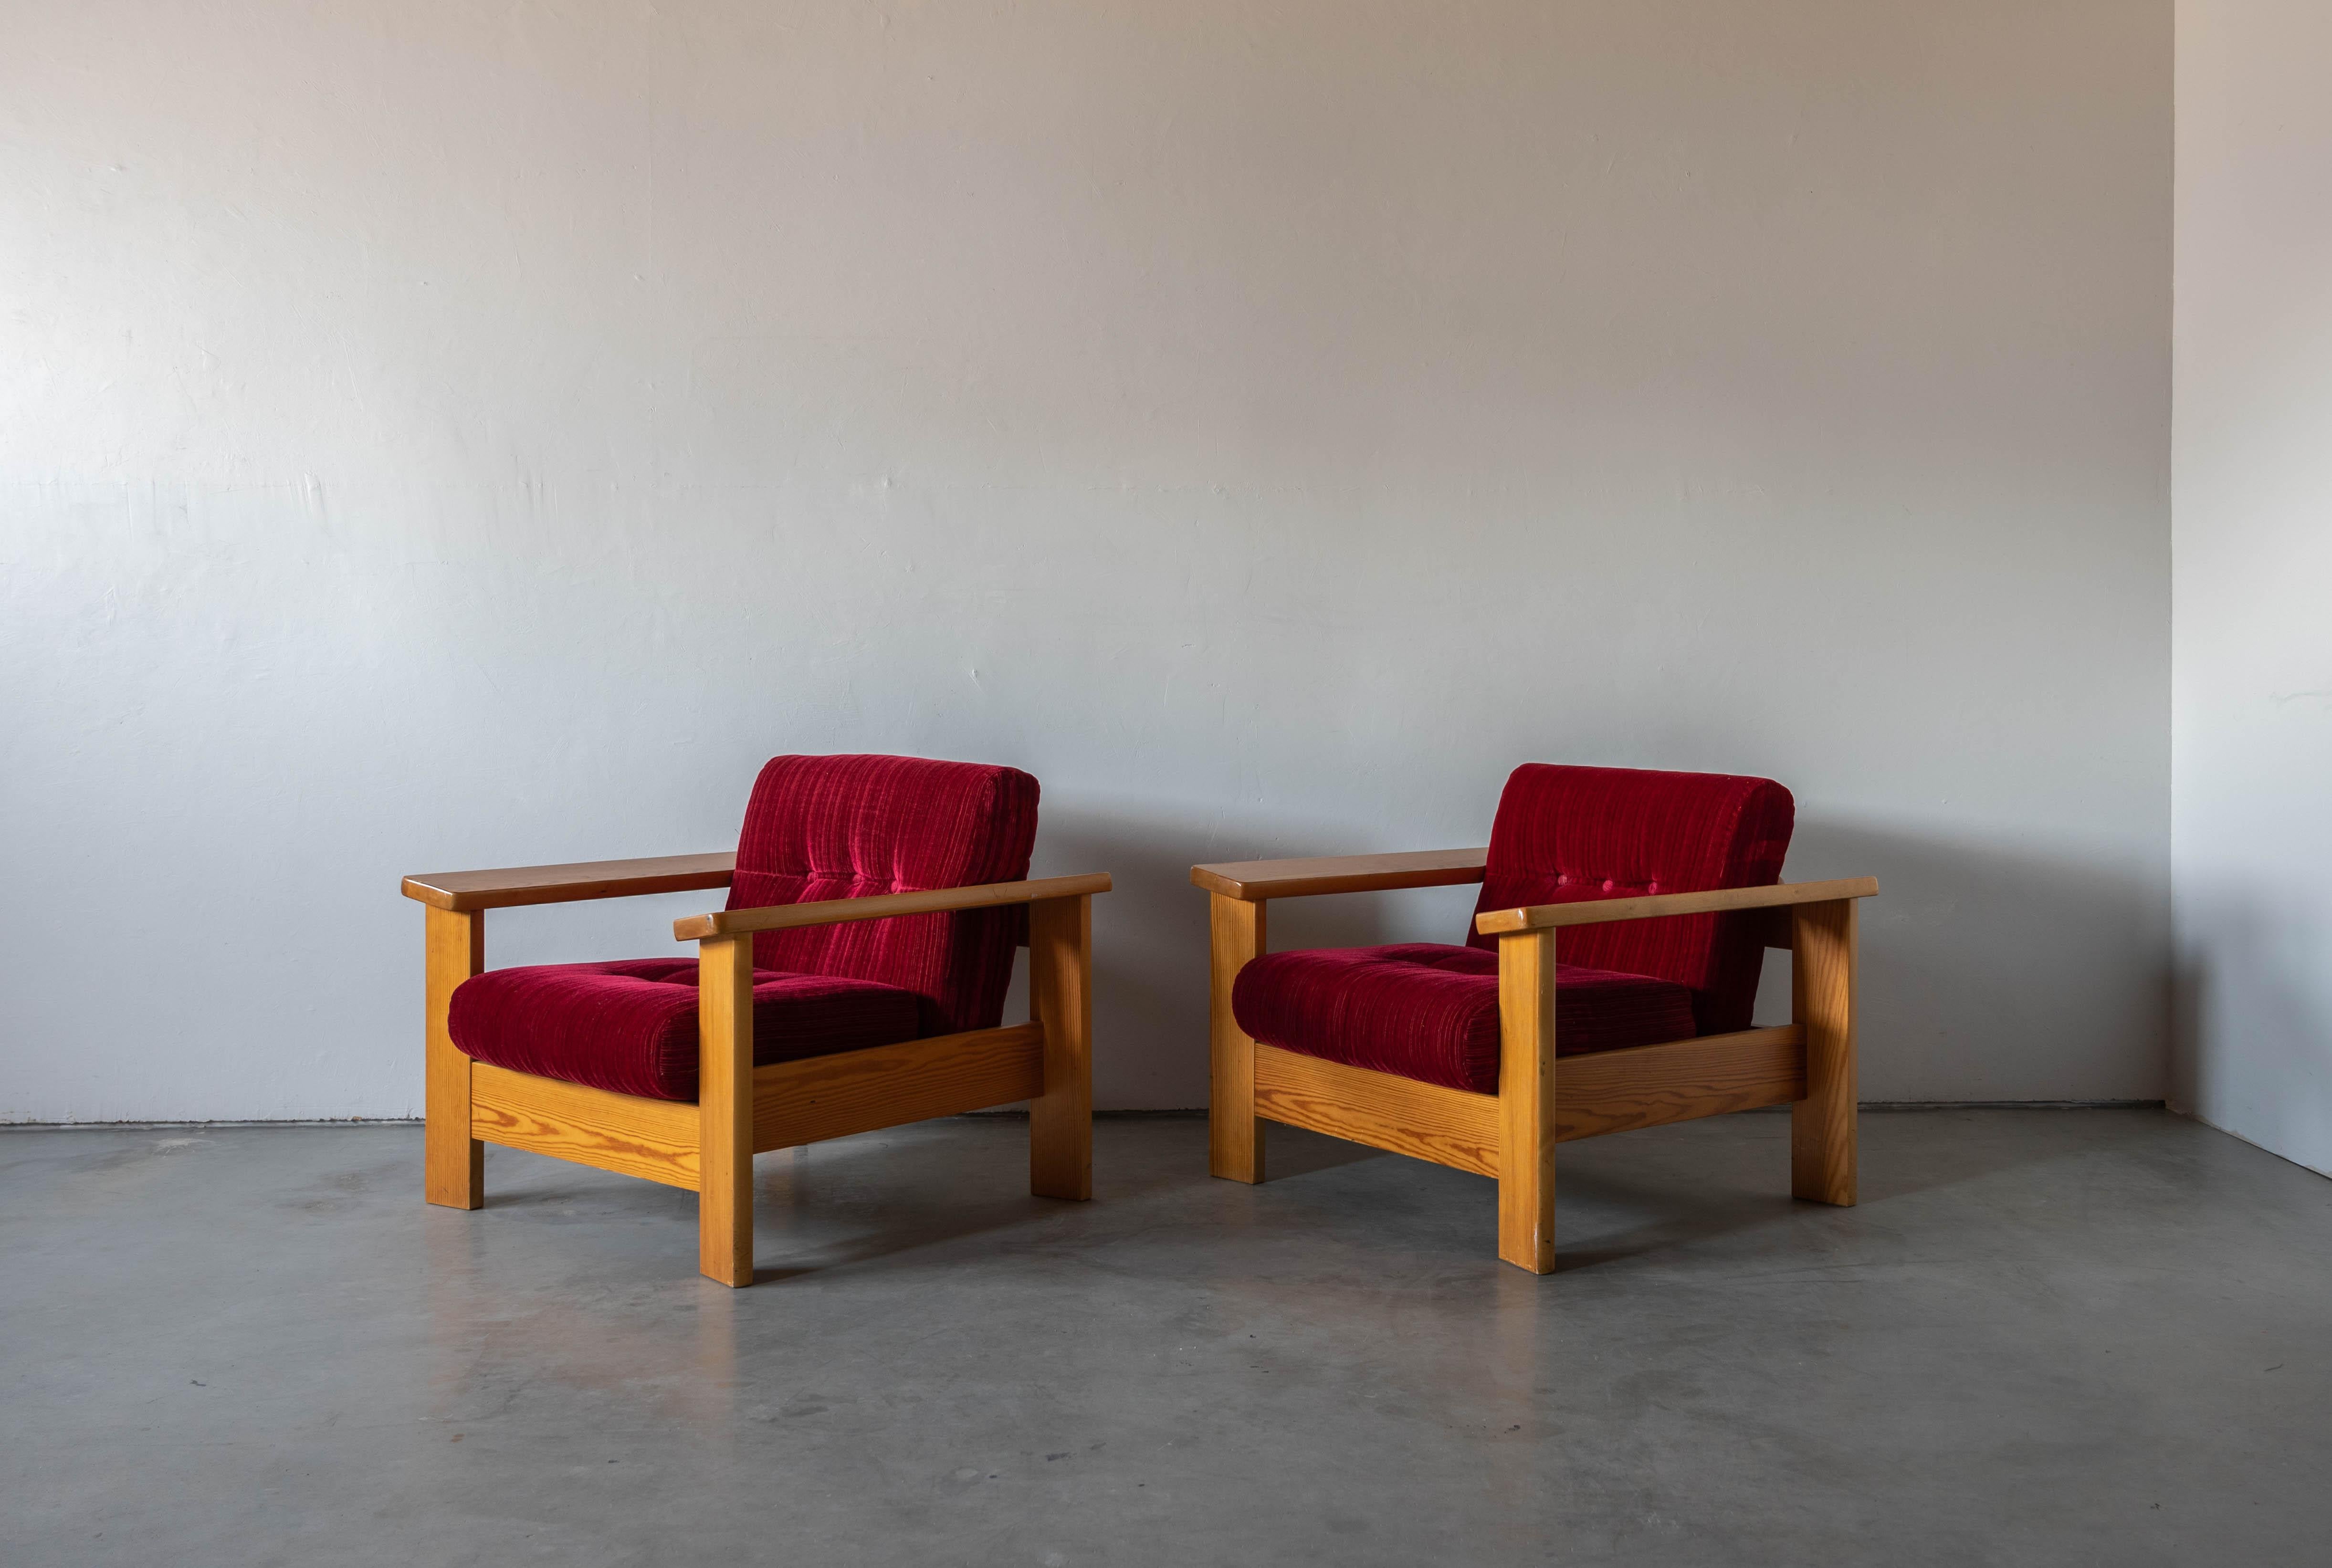 Une paire de chaises longues. Conçu et produit en Suède, dans les années 1970. Coussin rembourré en tissu et muni de boutons.

